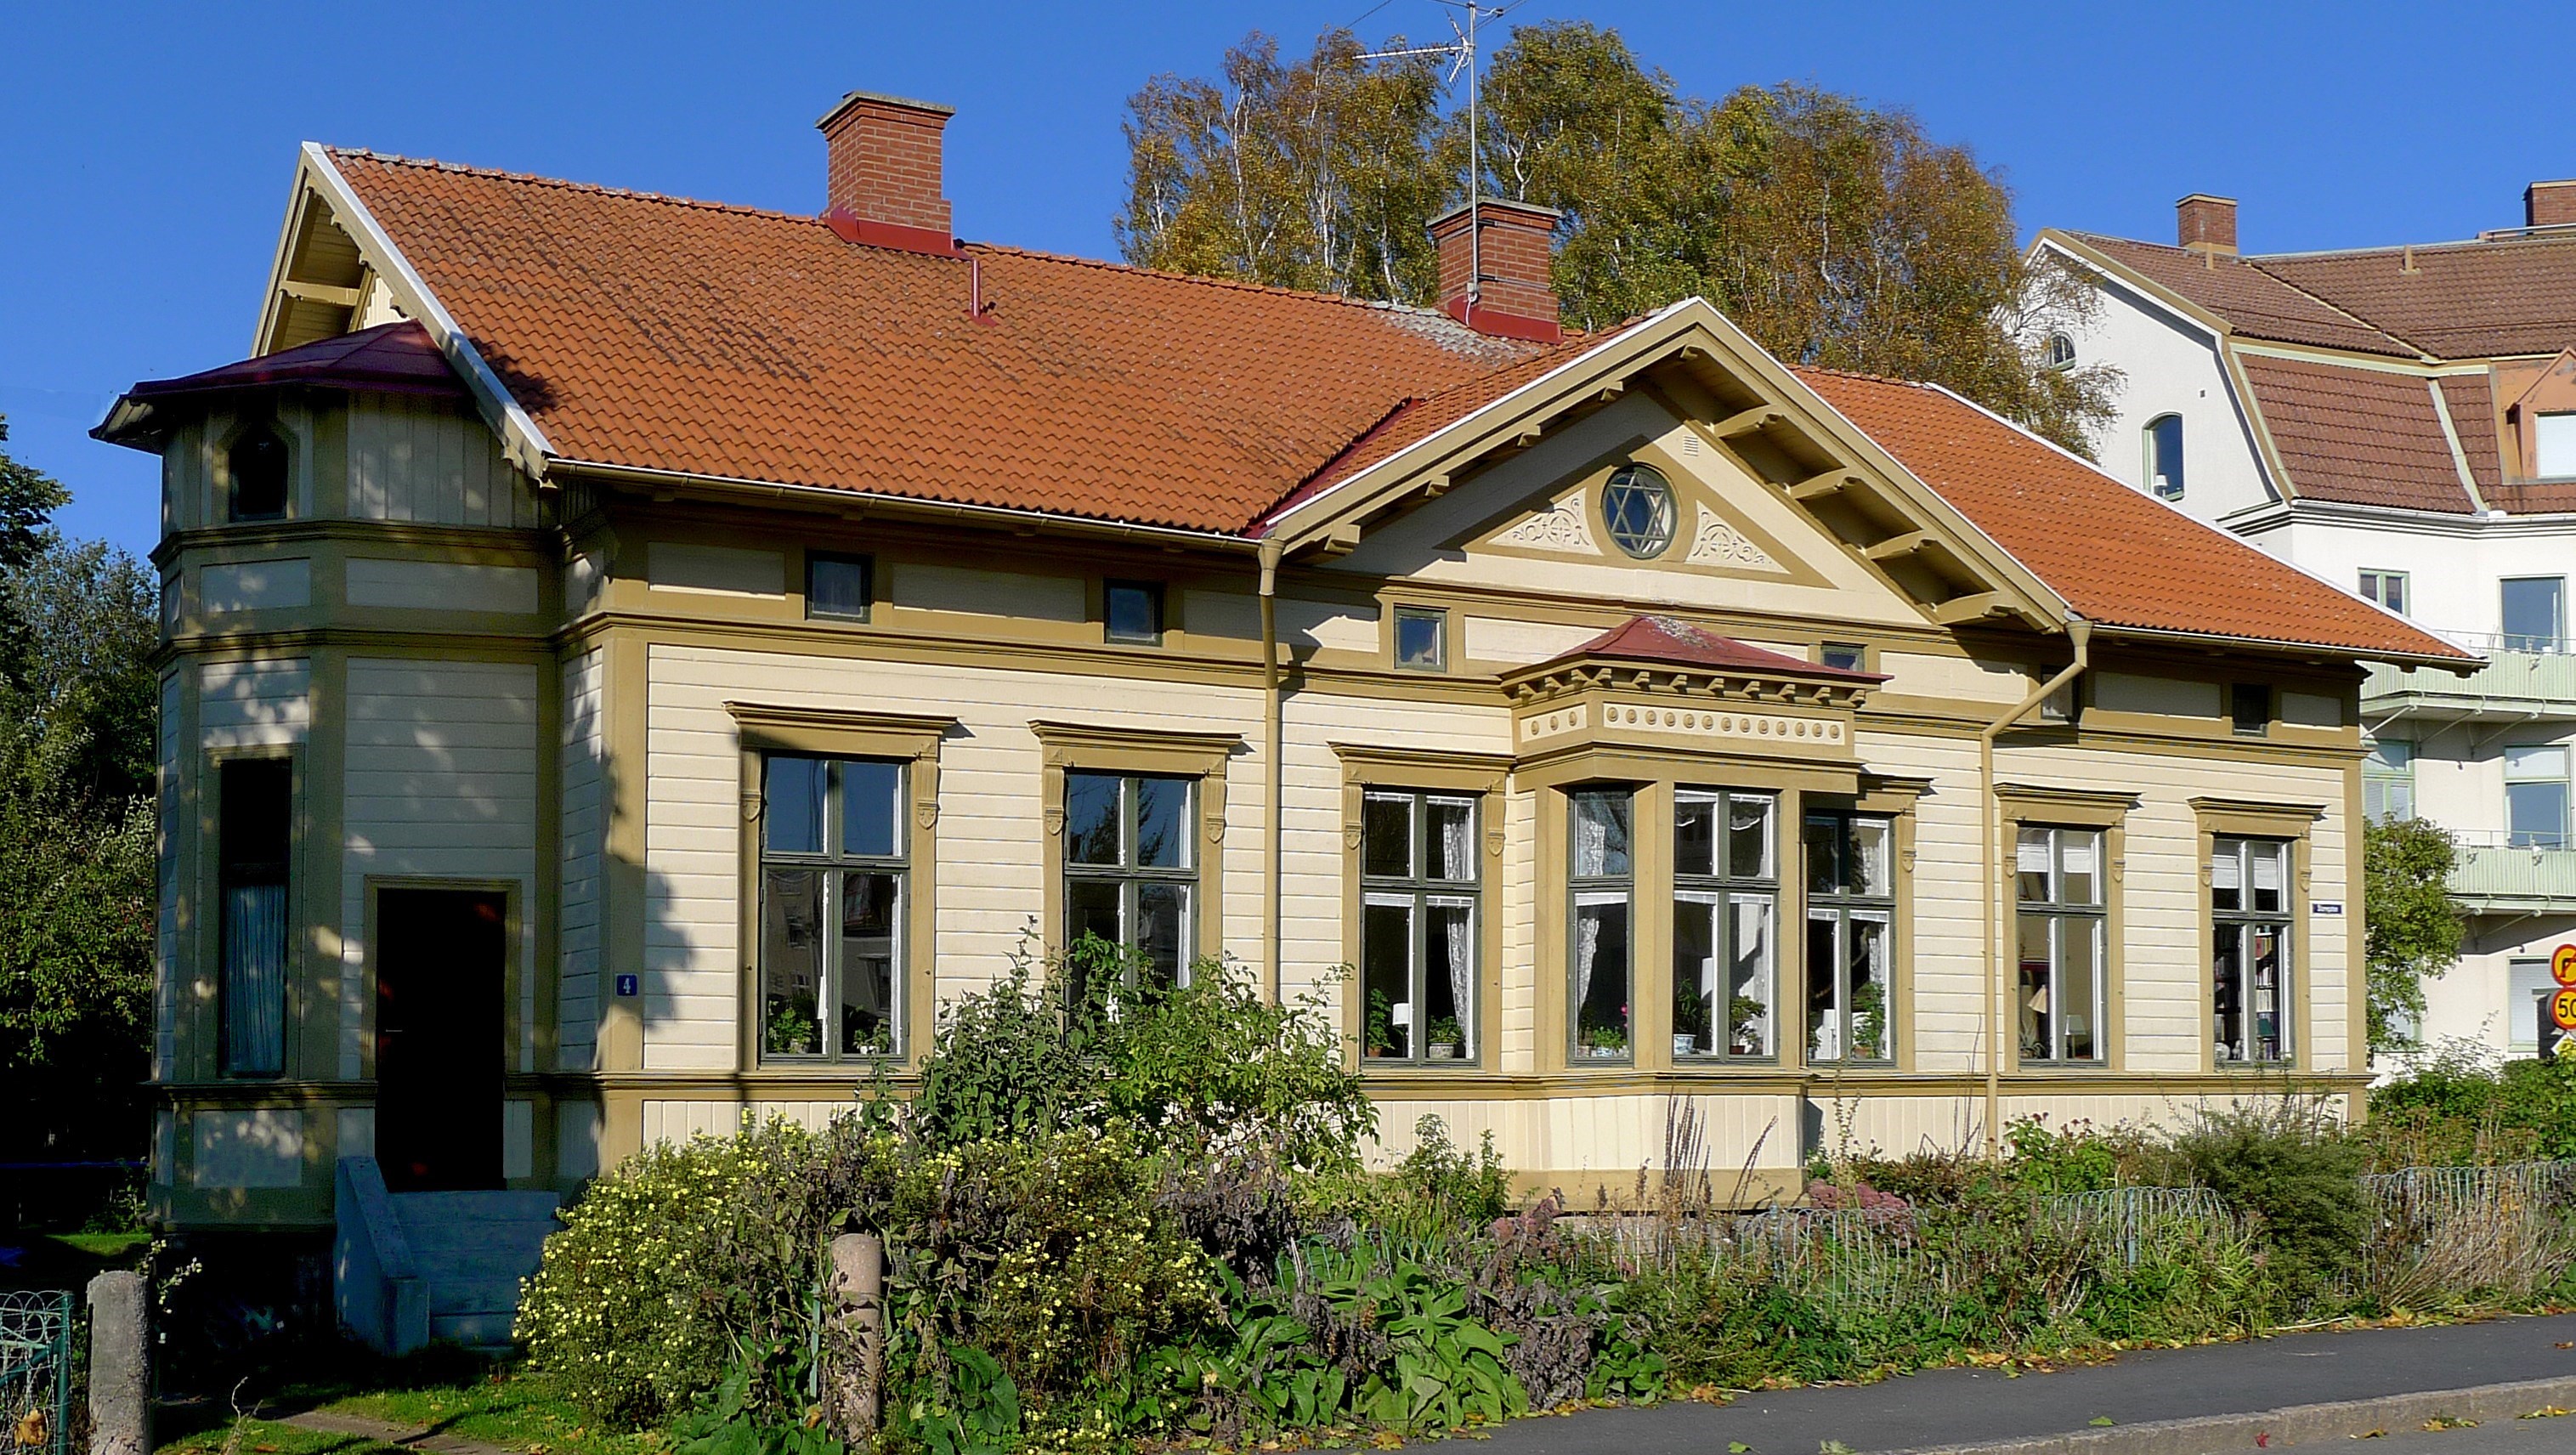 Gult hus med markerade fönsterfoder och rött tak